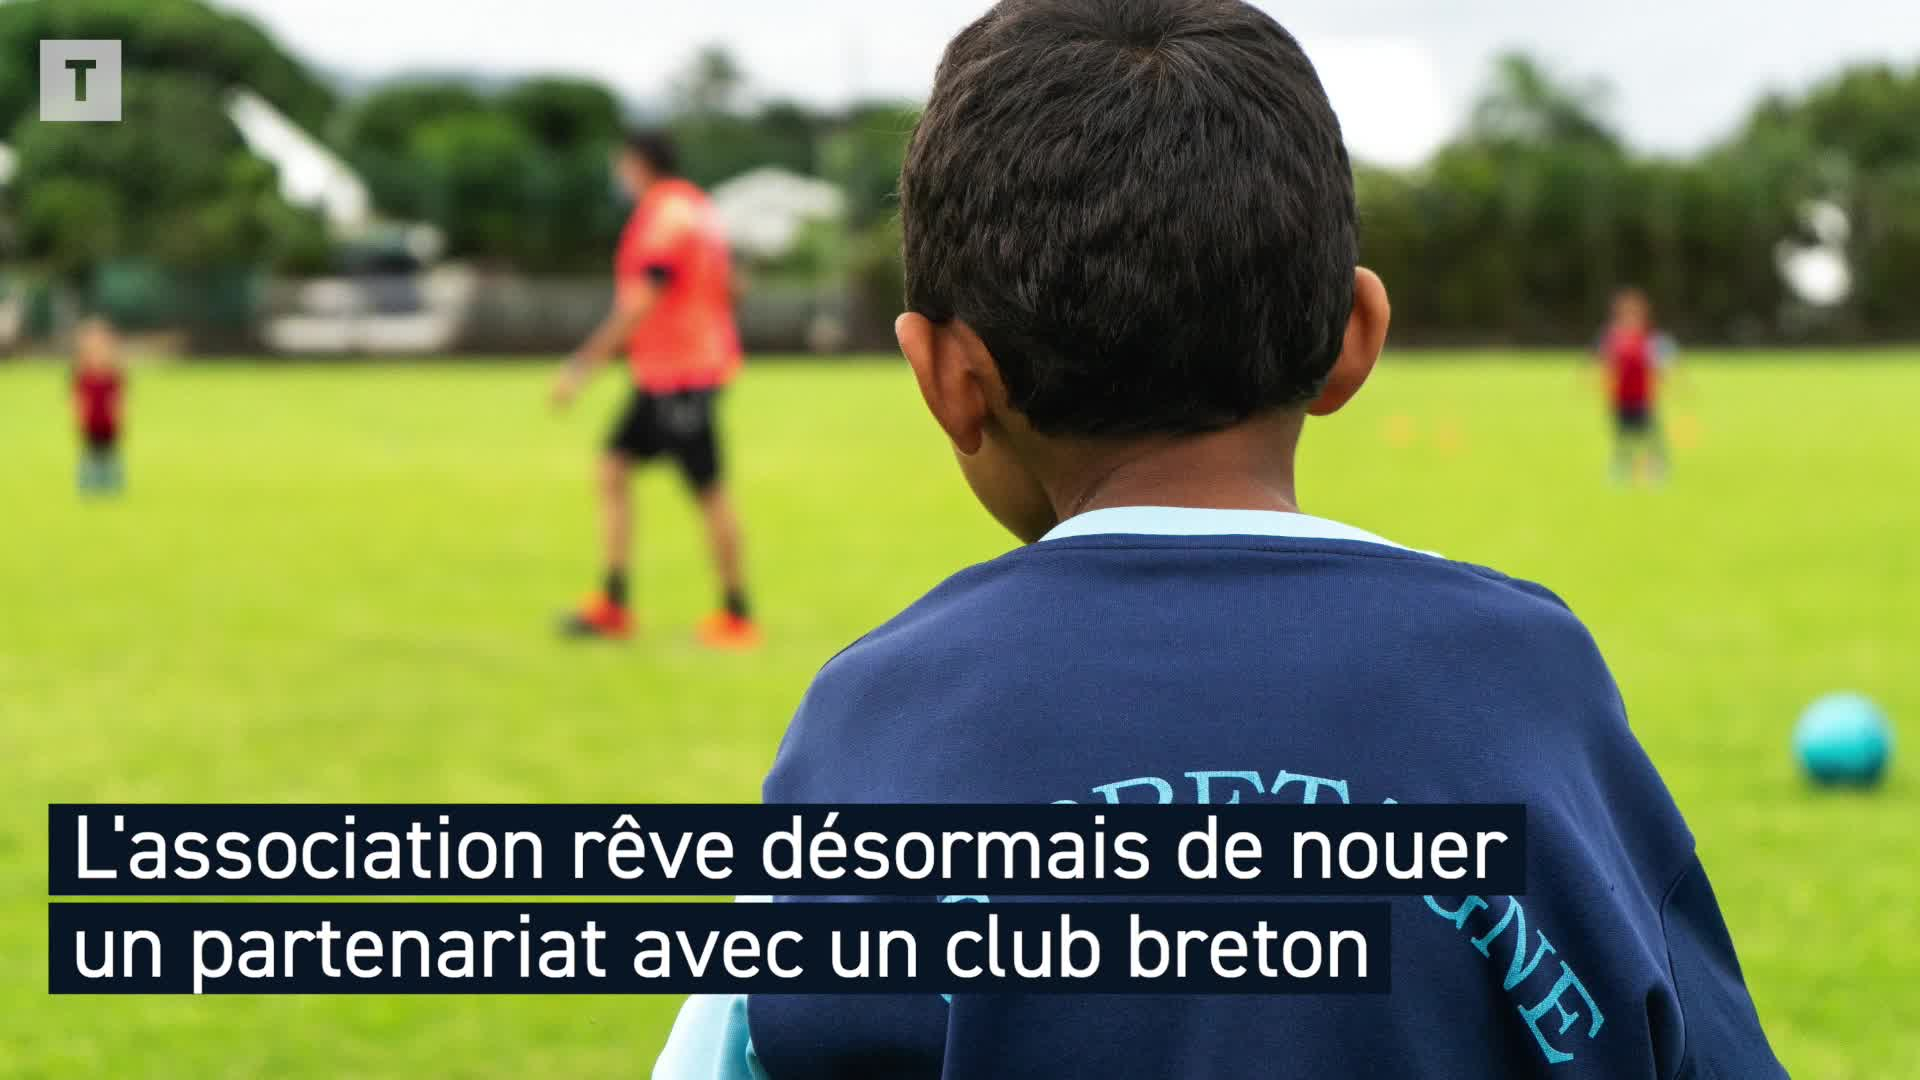 Bienvenue à l'AS Bretagne, le club le plus breton de La Réunion (Le Télégramme)